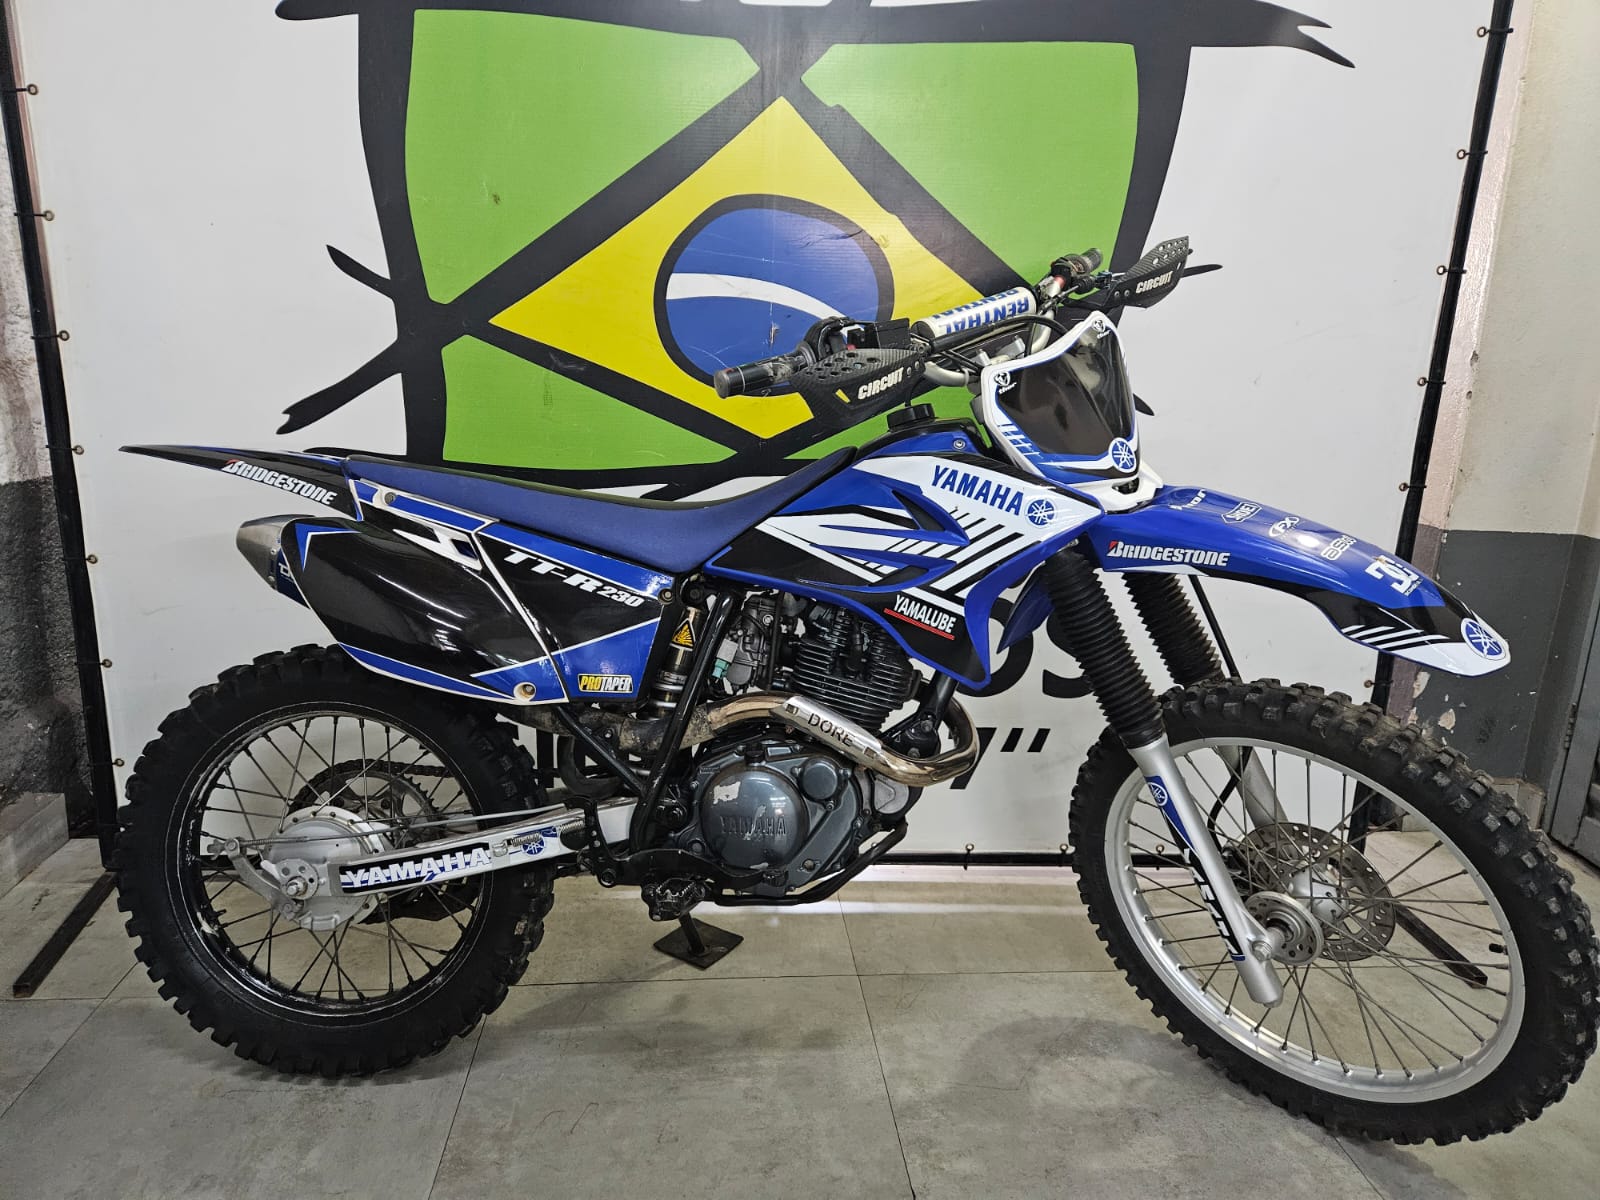 Motos YAMAHA TT-R no Brasil